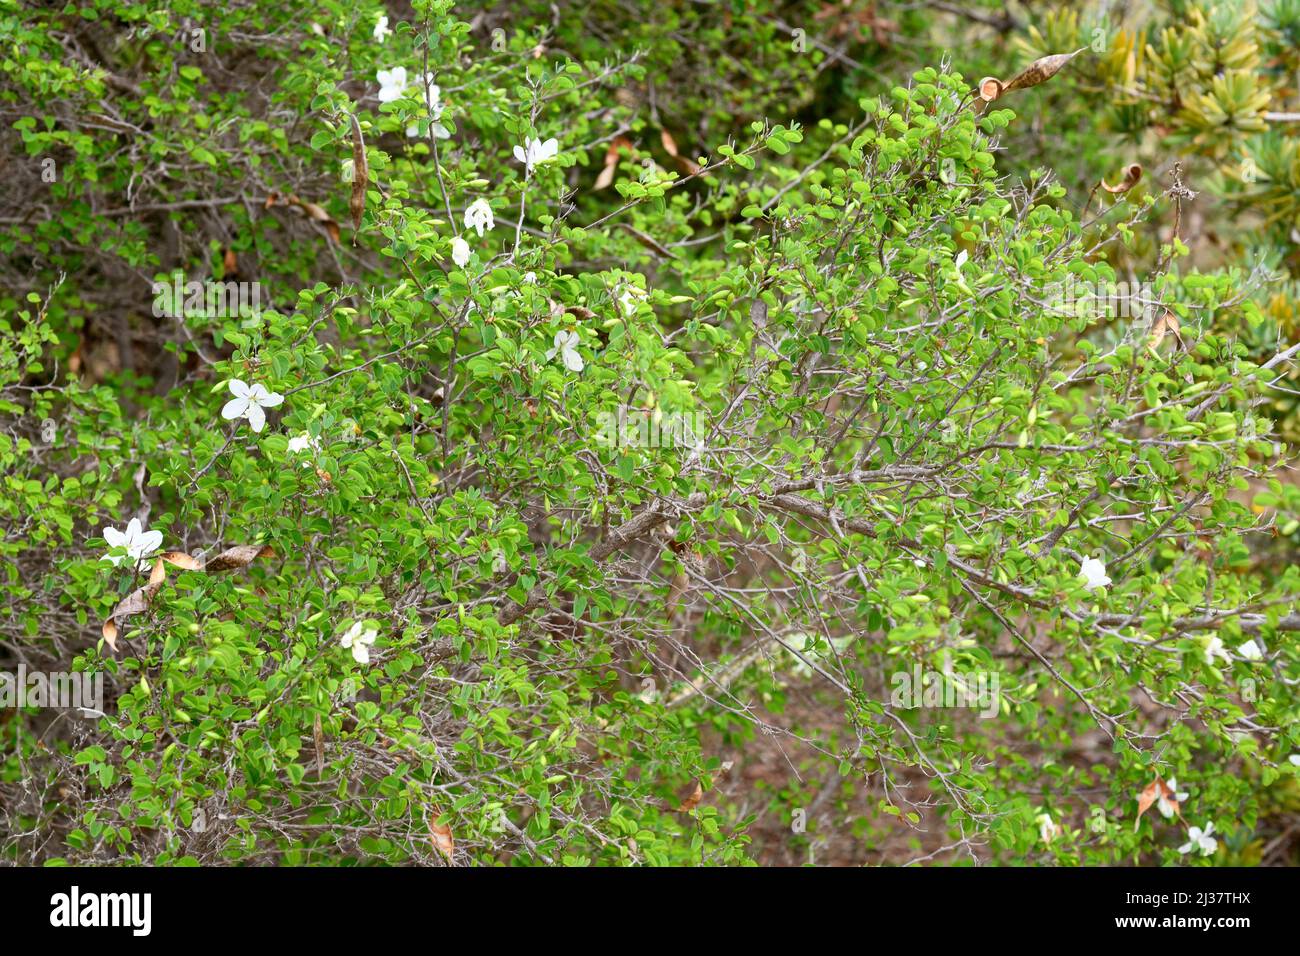 Natal bahuinia (Bahuinia natalensis) ist ein immergrüner Strauch aus Südafrika. Blühendes Exemplar. Stockfoto